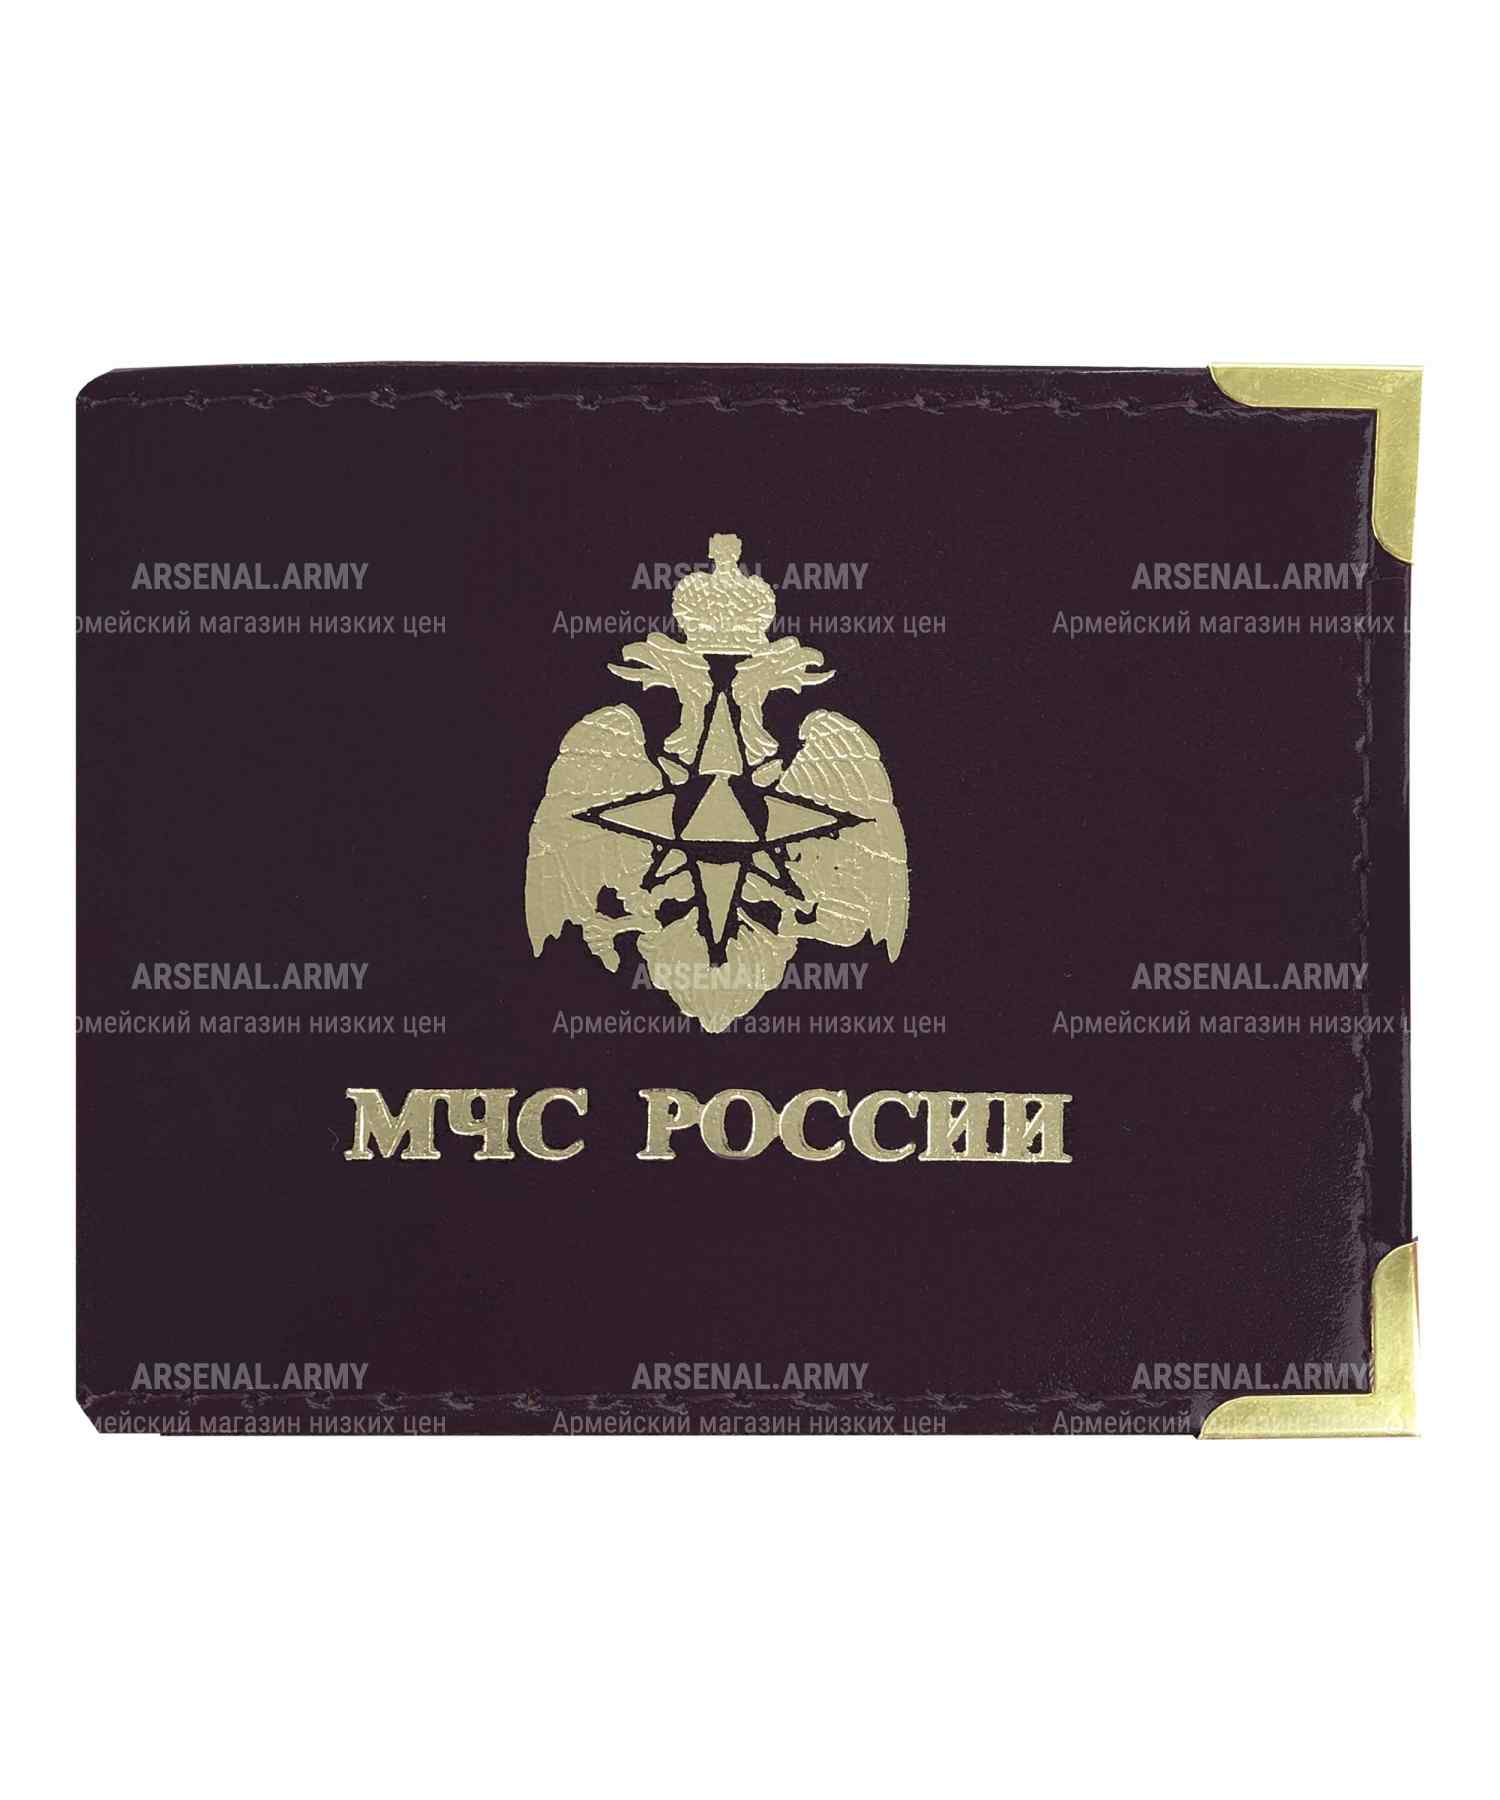 Обложка на удостоверение МЧС России